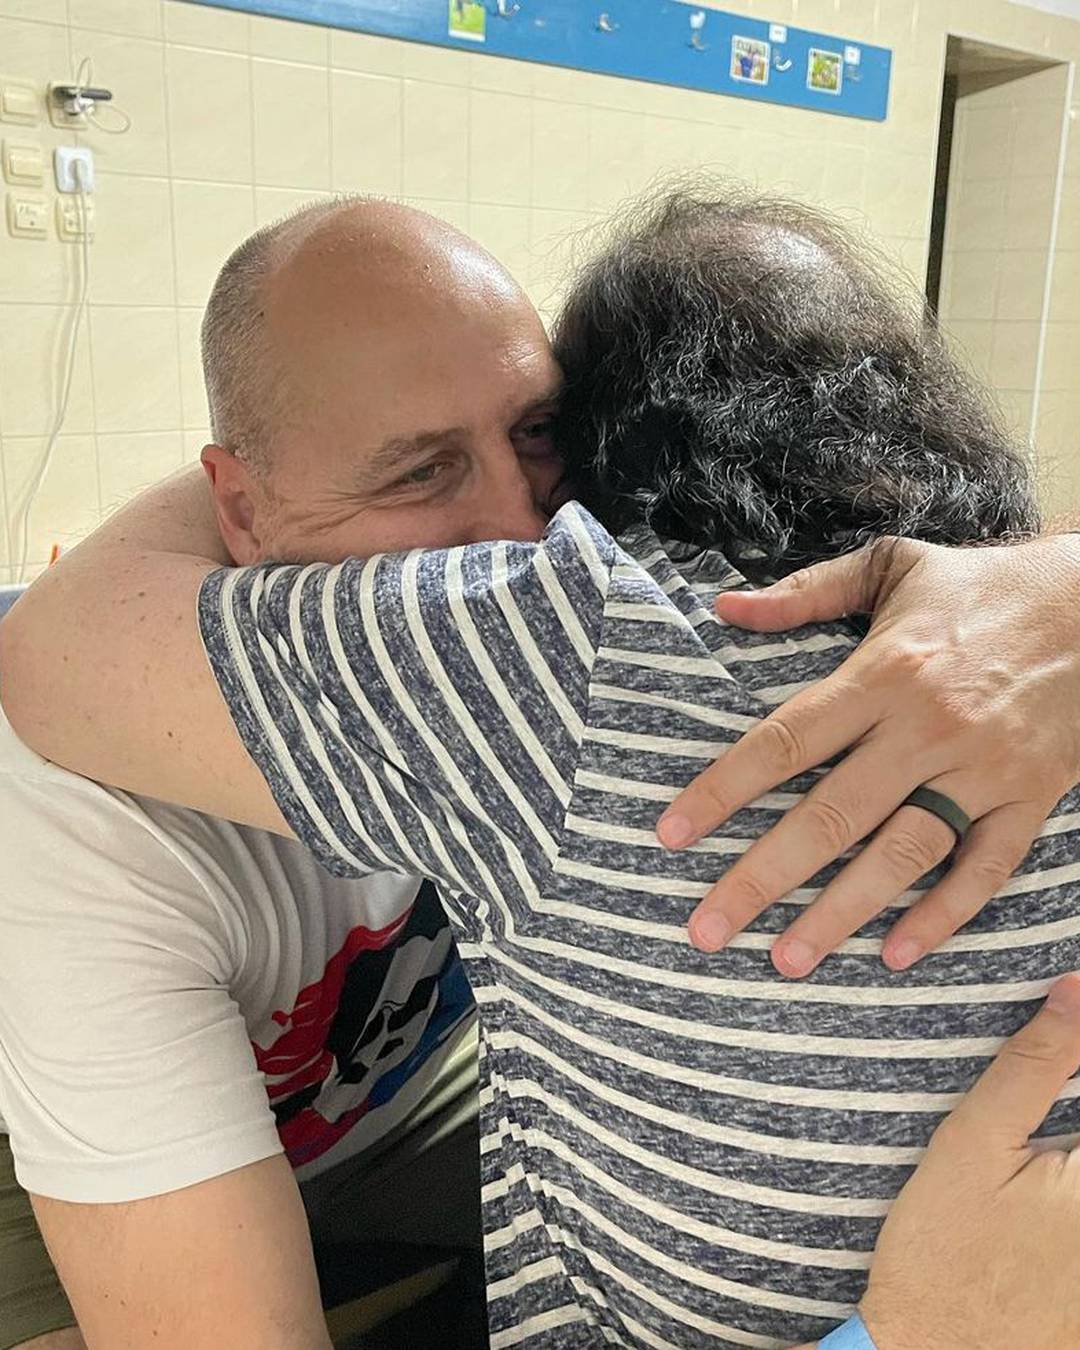 Dino Rađa u Mišinom zagrljaju nakon koncerta: 'Pamtit ću dok sam živ, on je prirodni fenomen'